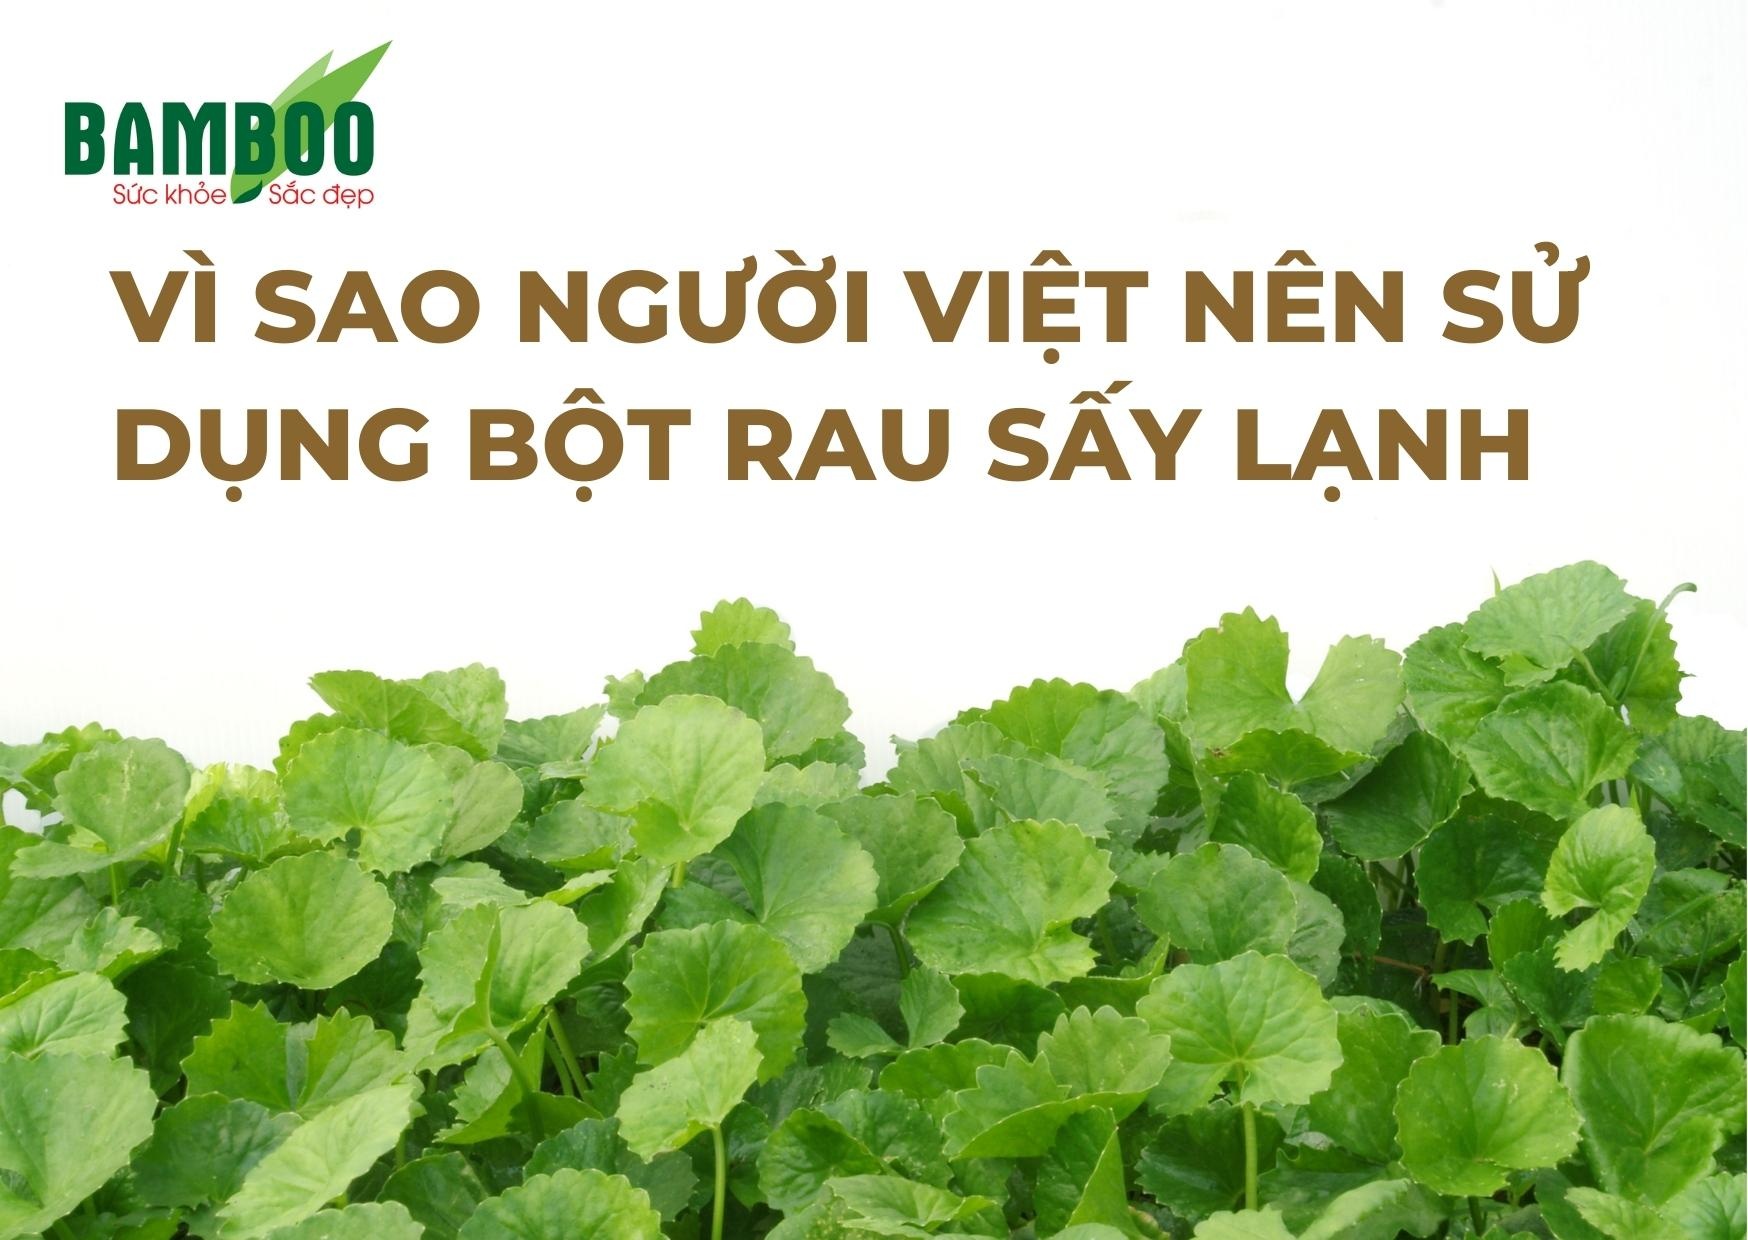 Vì sao người Việt nên sử dụng bột rau sấy lạnh-1